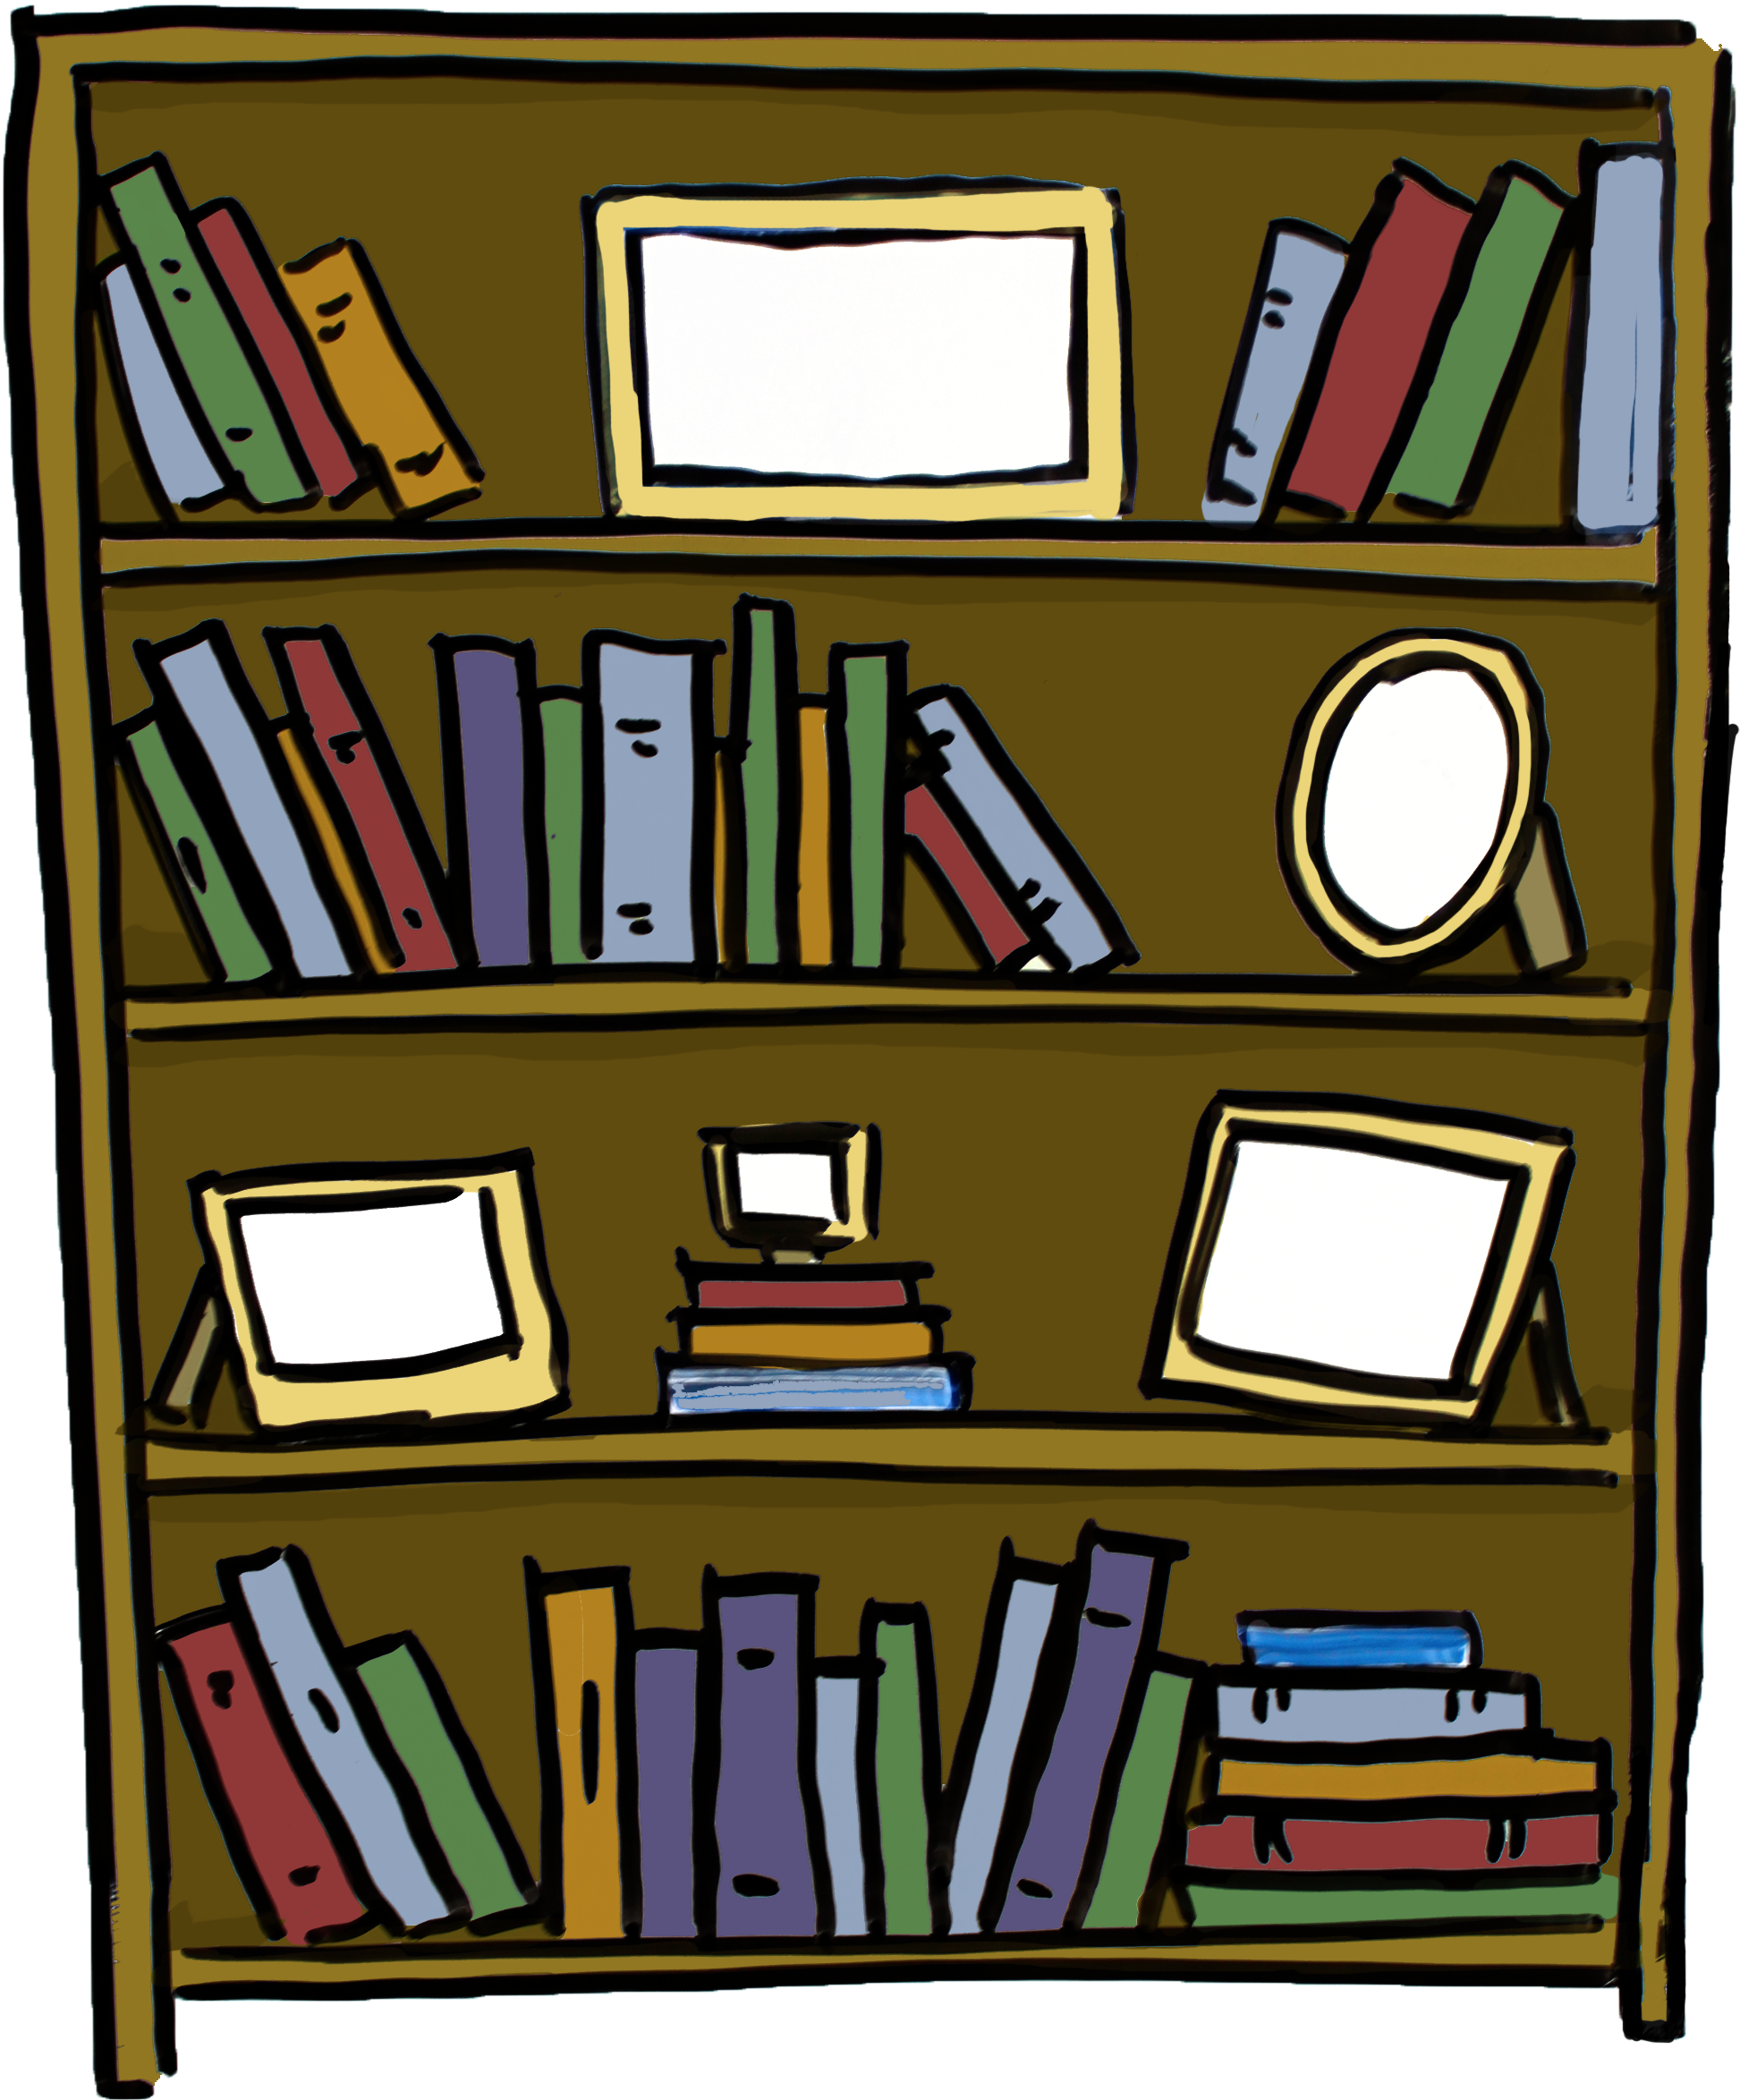 Bookshelf Story-based Marketing Animation - Color (2400x2876)